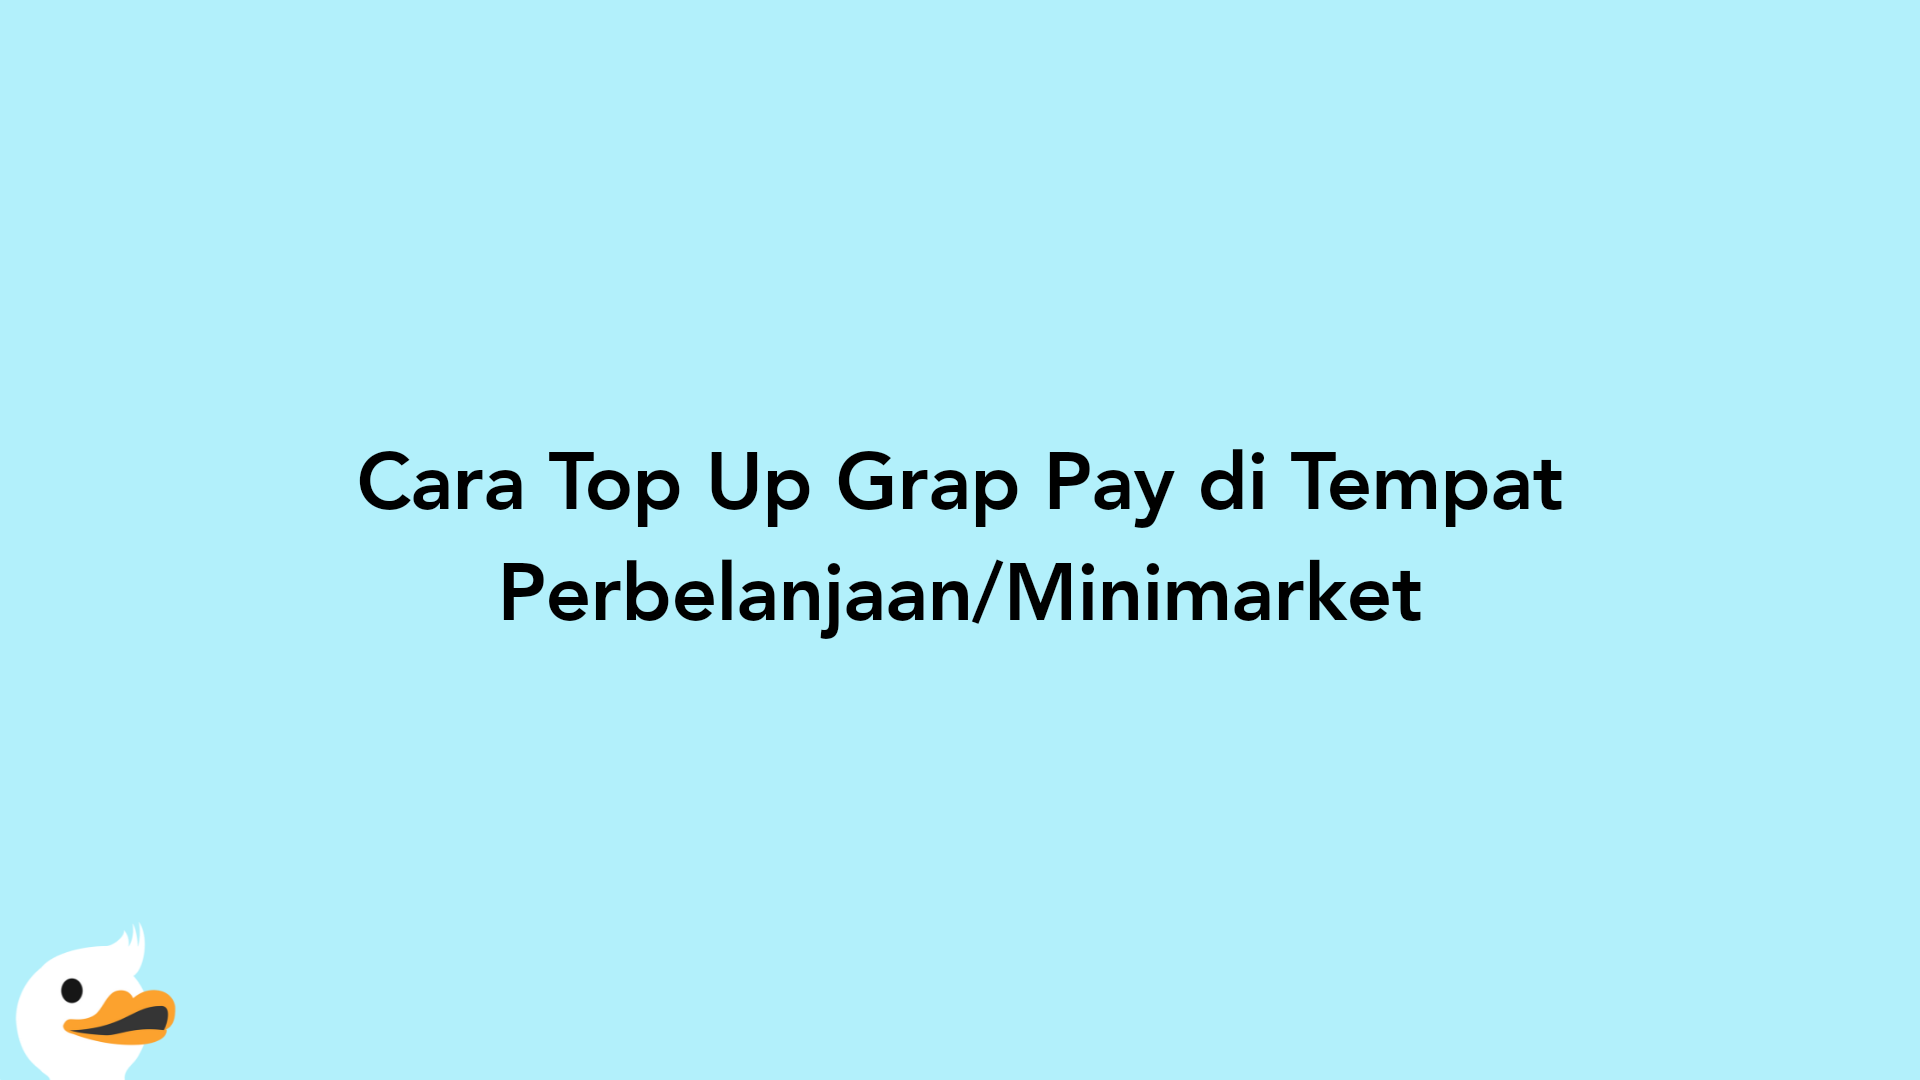 Cara Top Up Grap Pay di Tempat Perbelanjaan/Minimarket